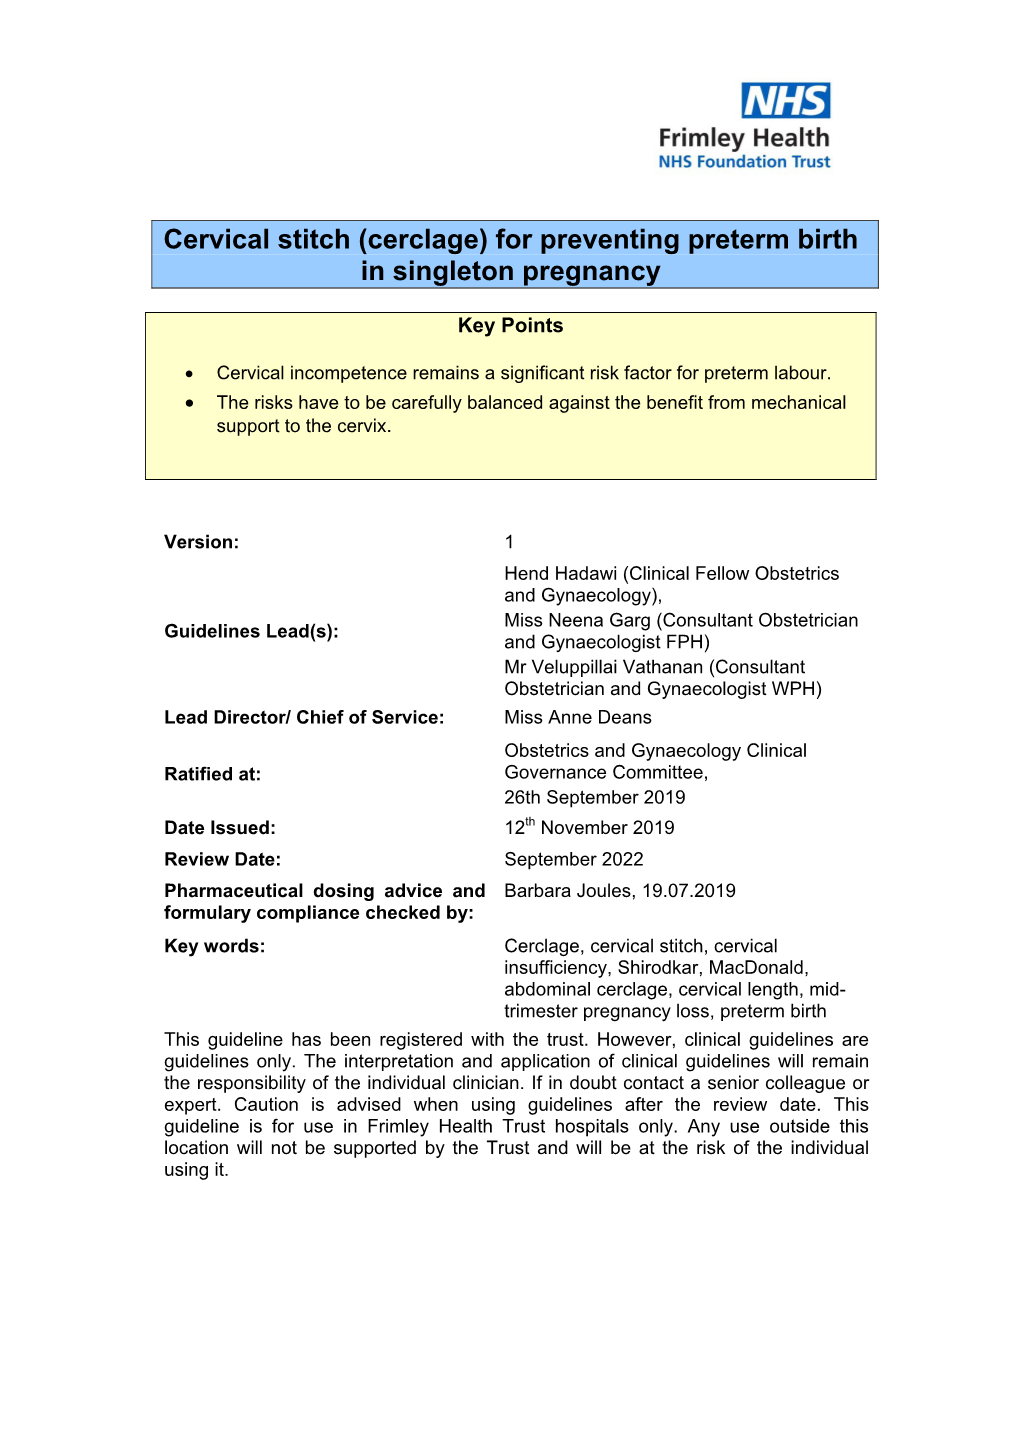 Cervical Stitch (Cerclage) for Preventing Preterm Birth in Singleton Pregnancy